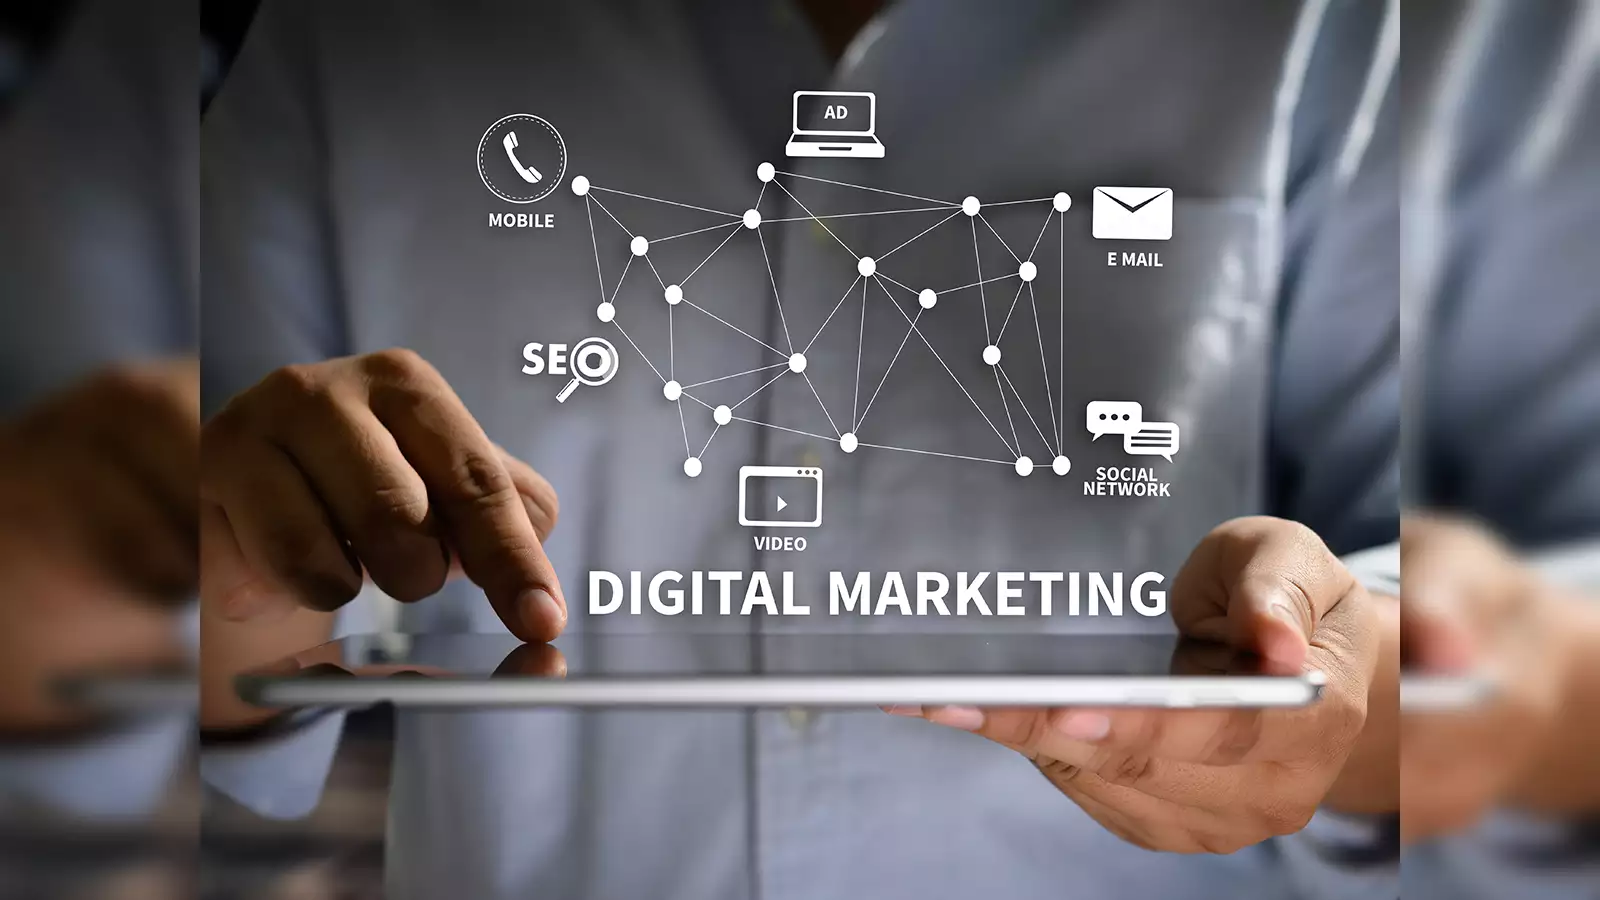 best digital marketing agency in dubai